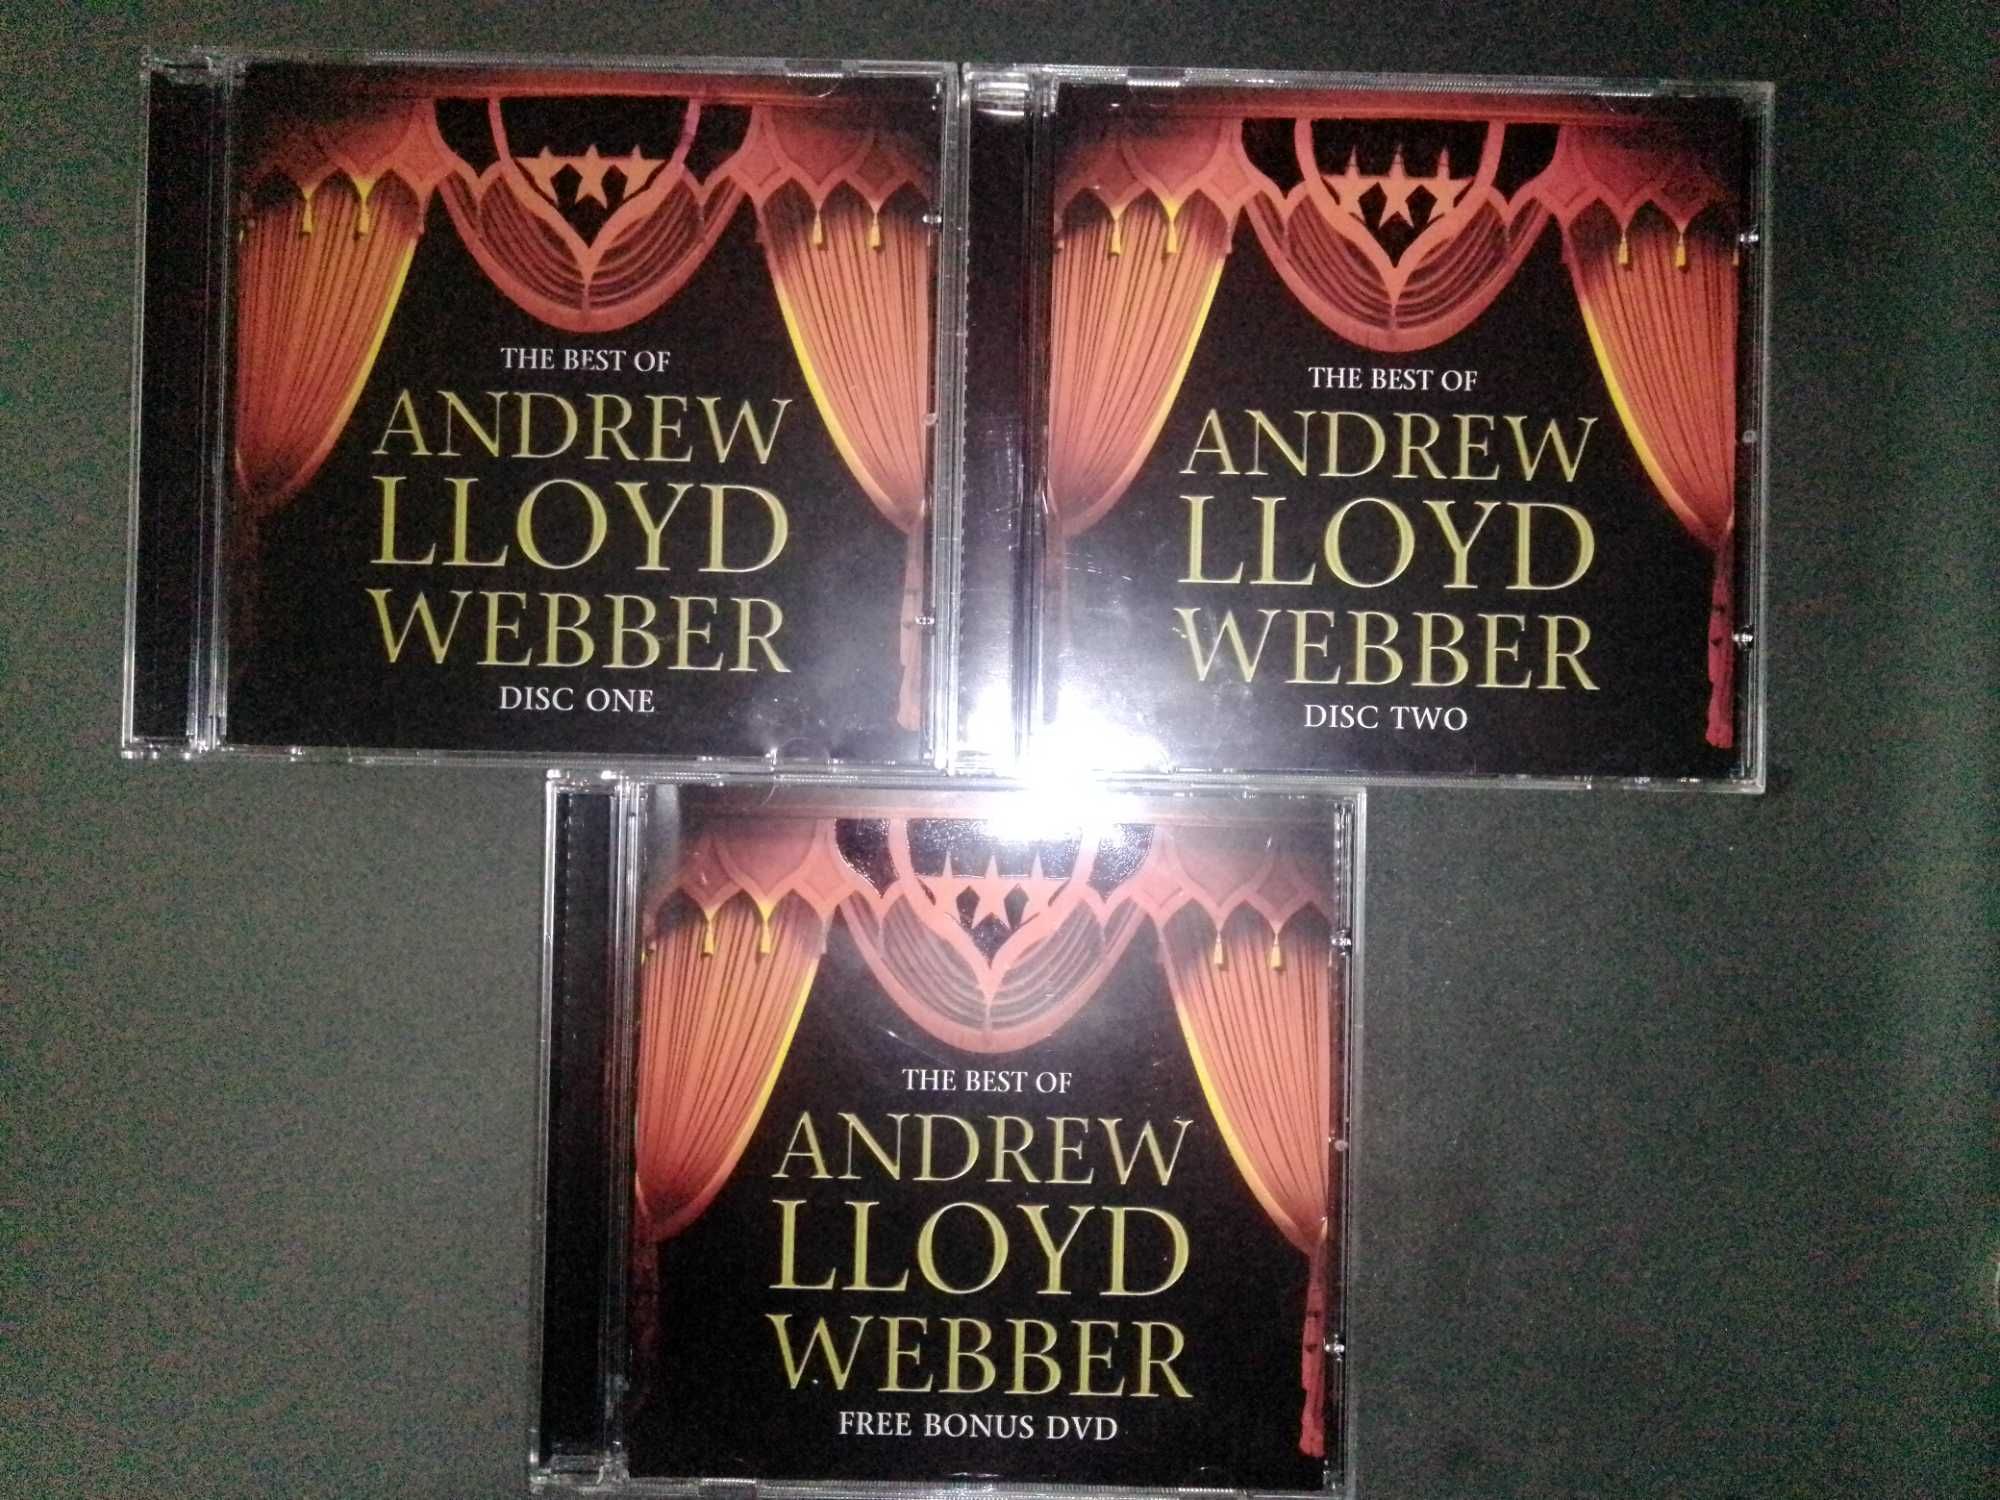 The best of Andrew Lloyd Webber
2 cd's e 1 dvd